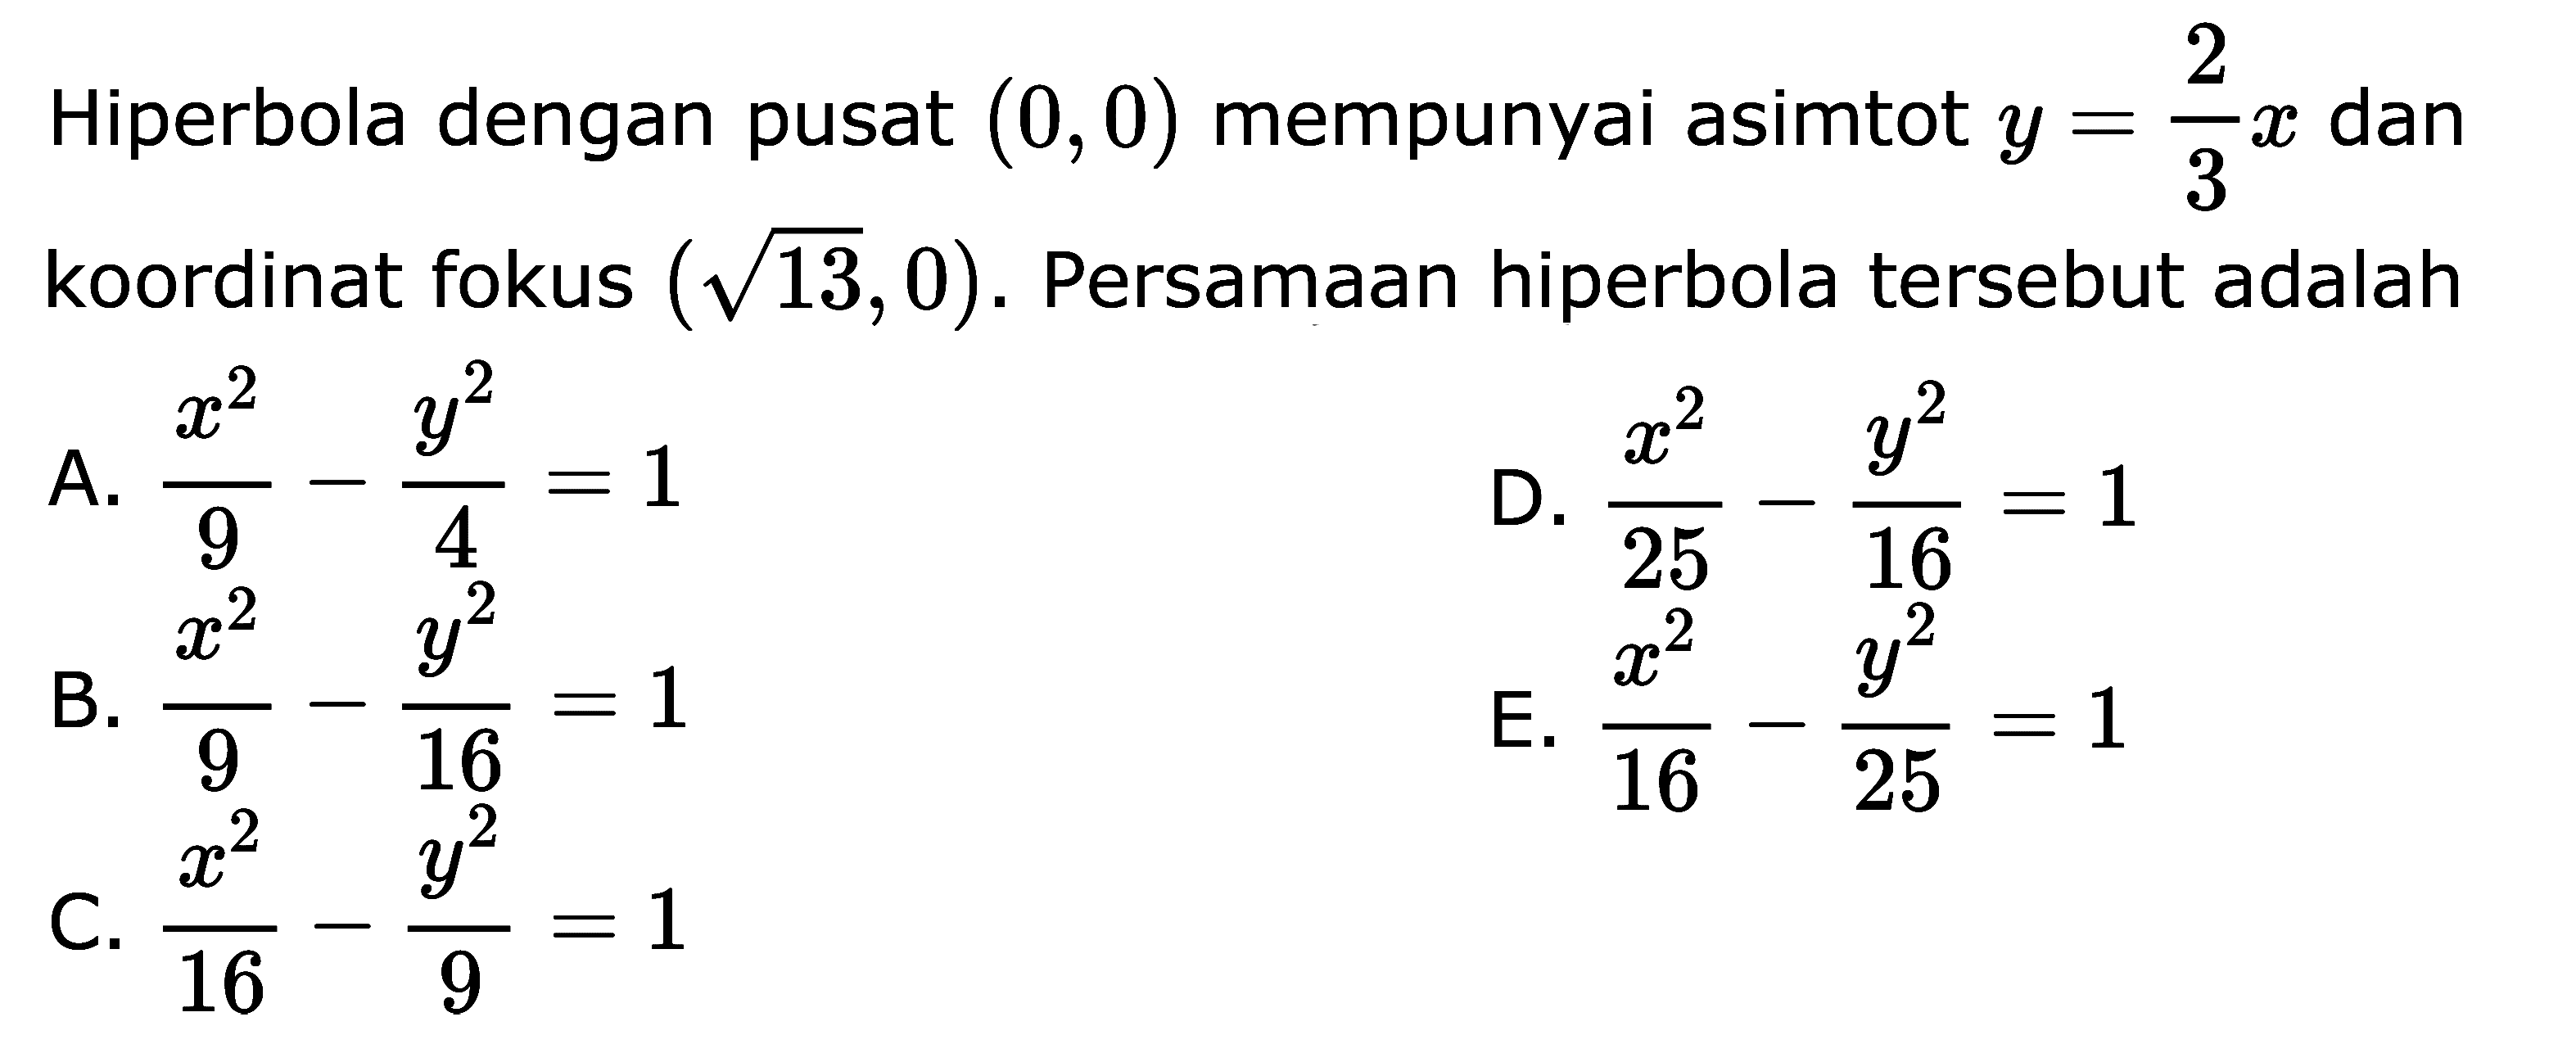 Hiperbola dengan pusat (0,0) mempunyai asimtot y = -2x/3 dan koordinat fokus . Persamaan hiperbola tersebut adalah